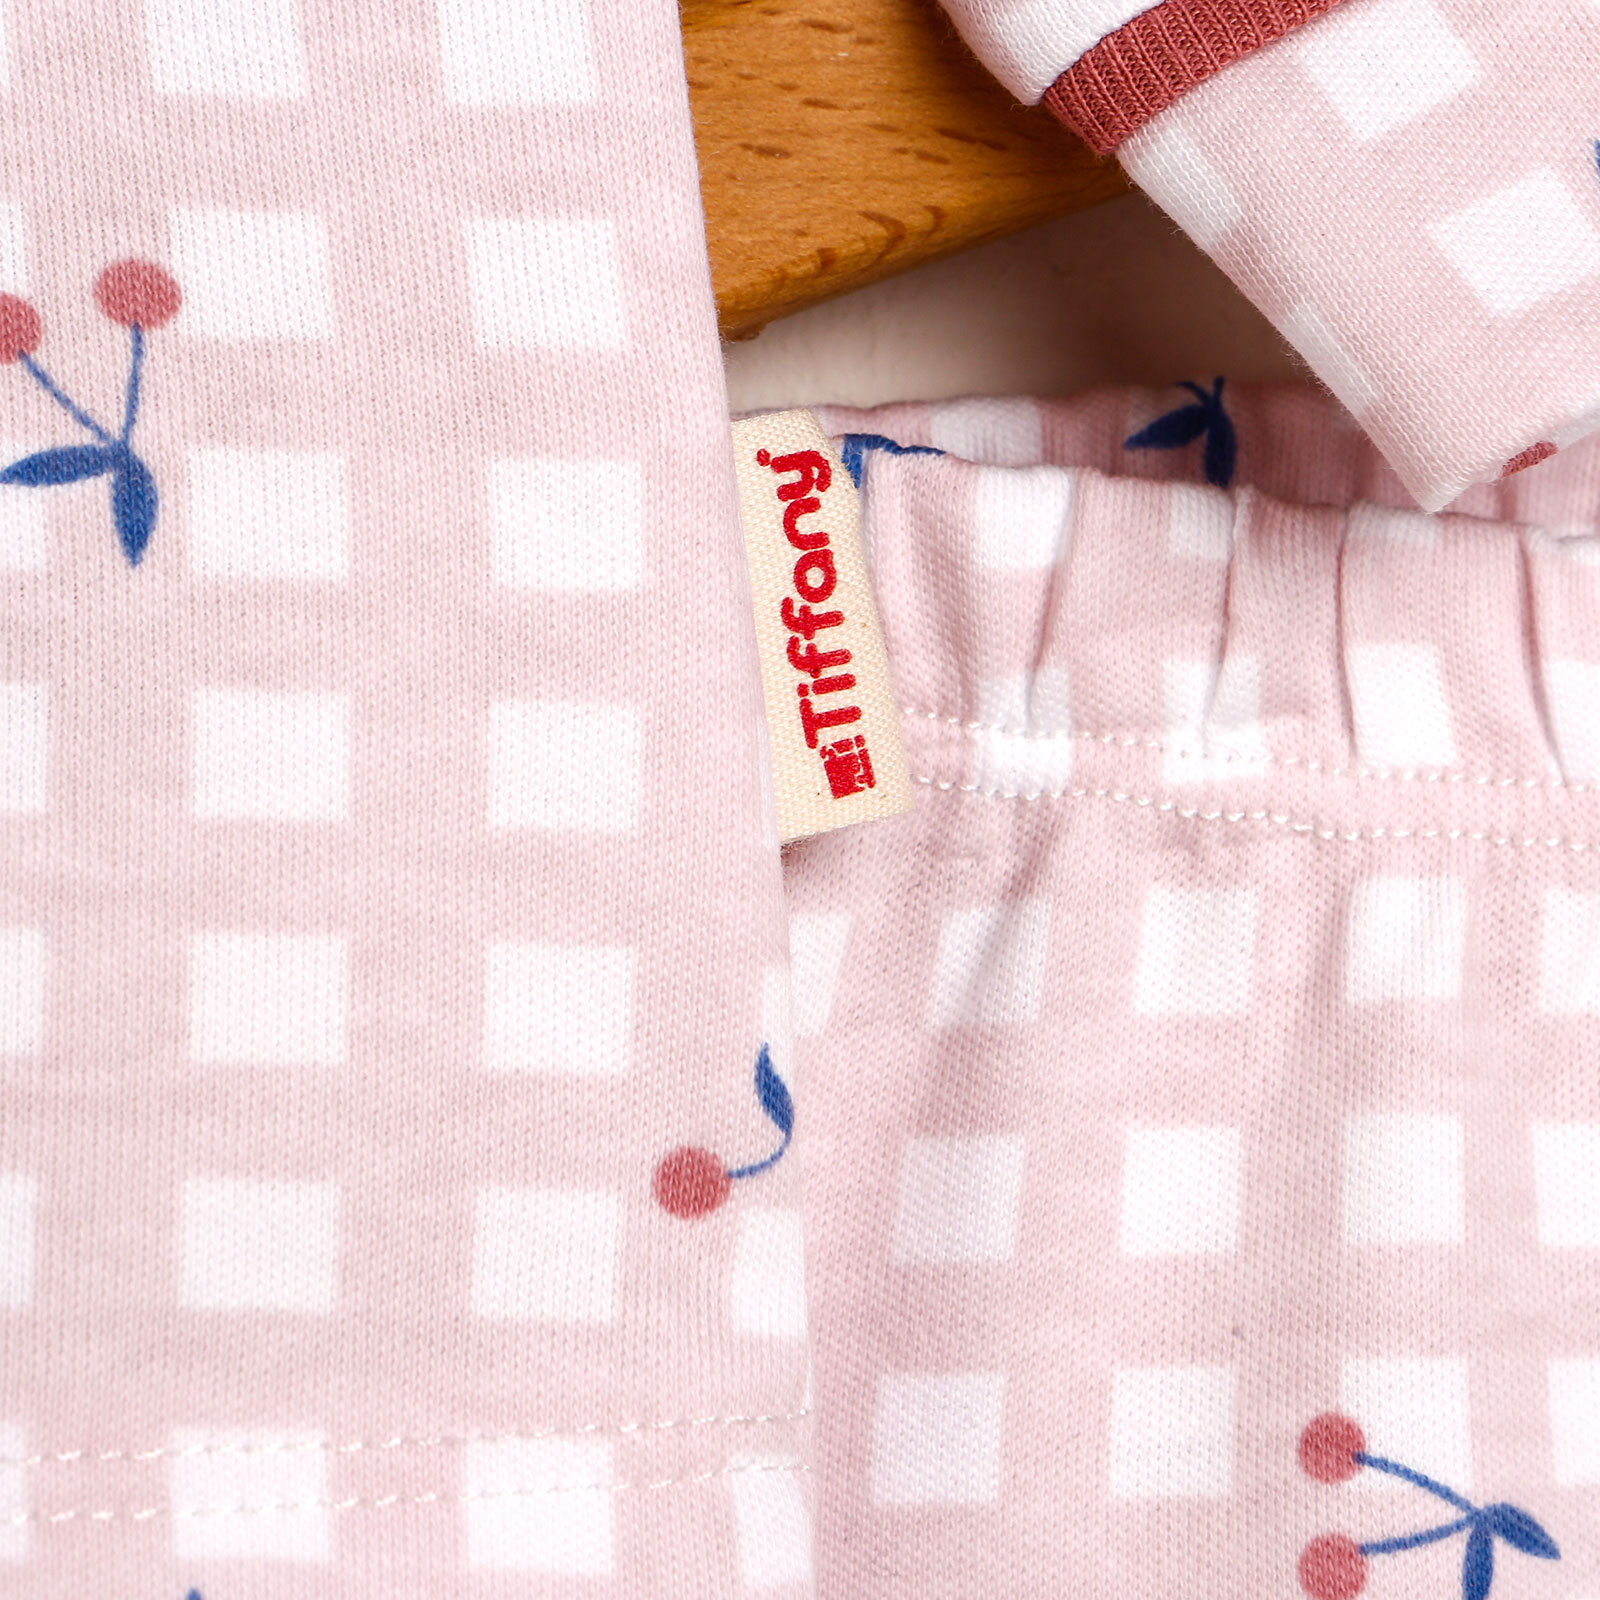 Cherry Pijama Takımı Kız Bebek Kız Bebek